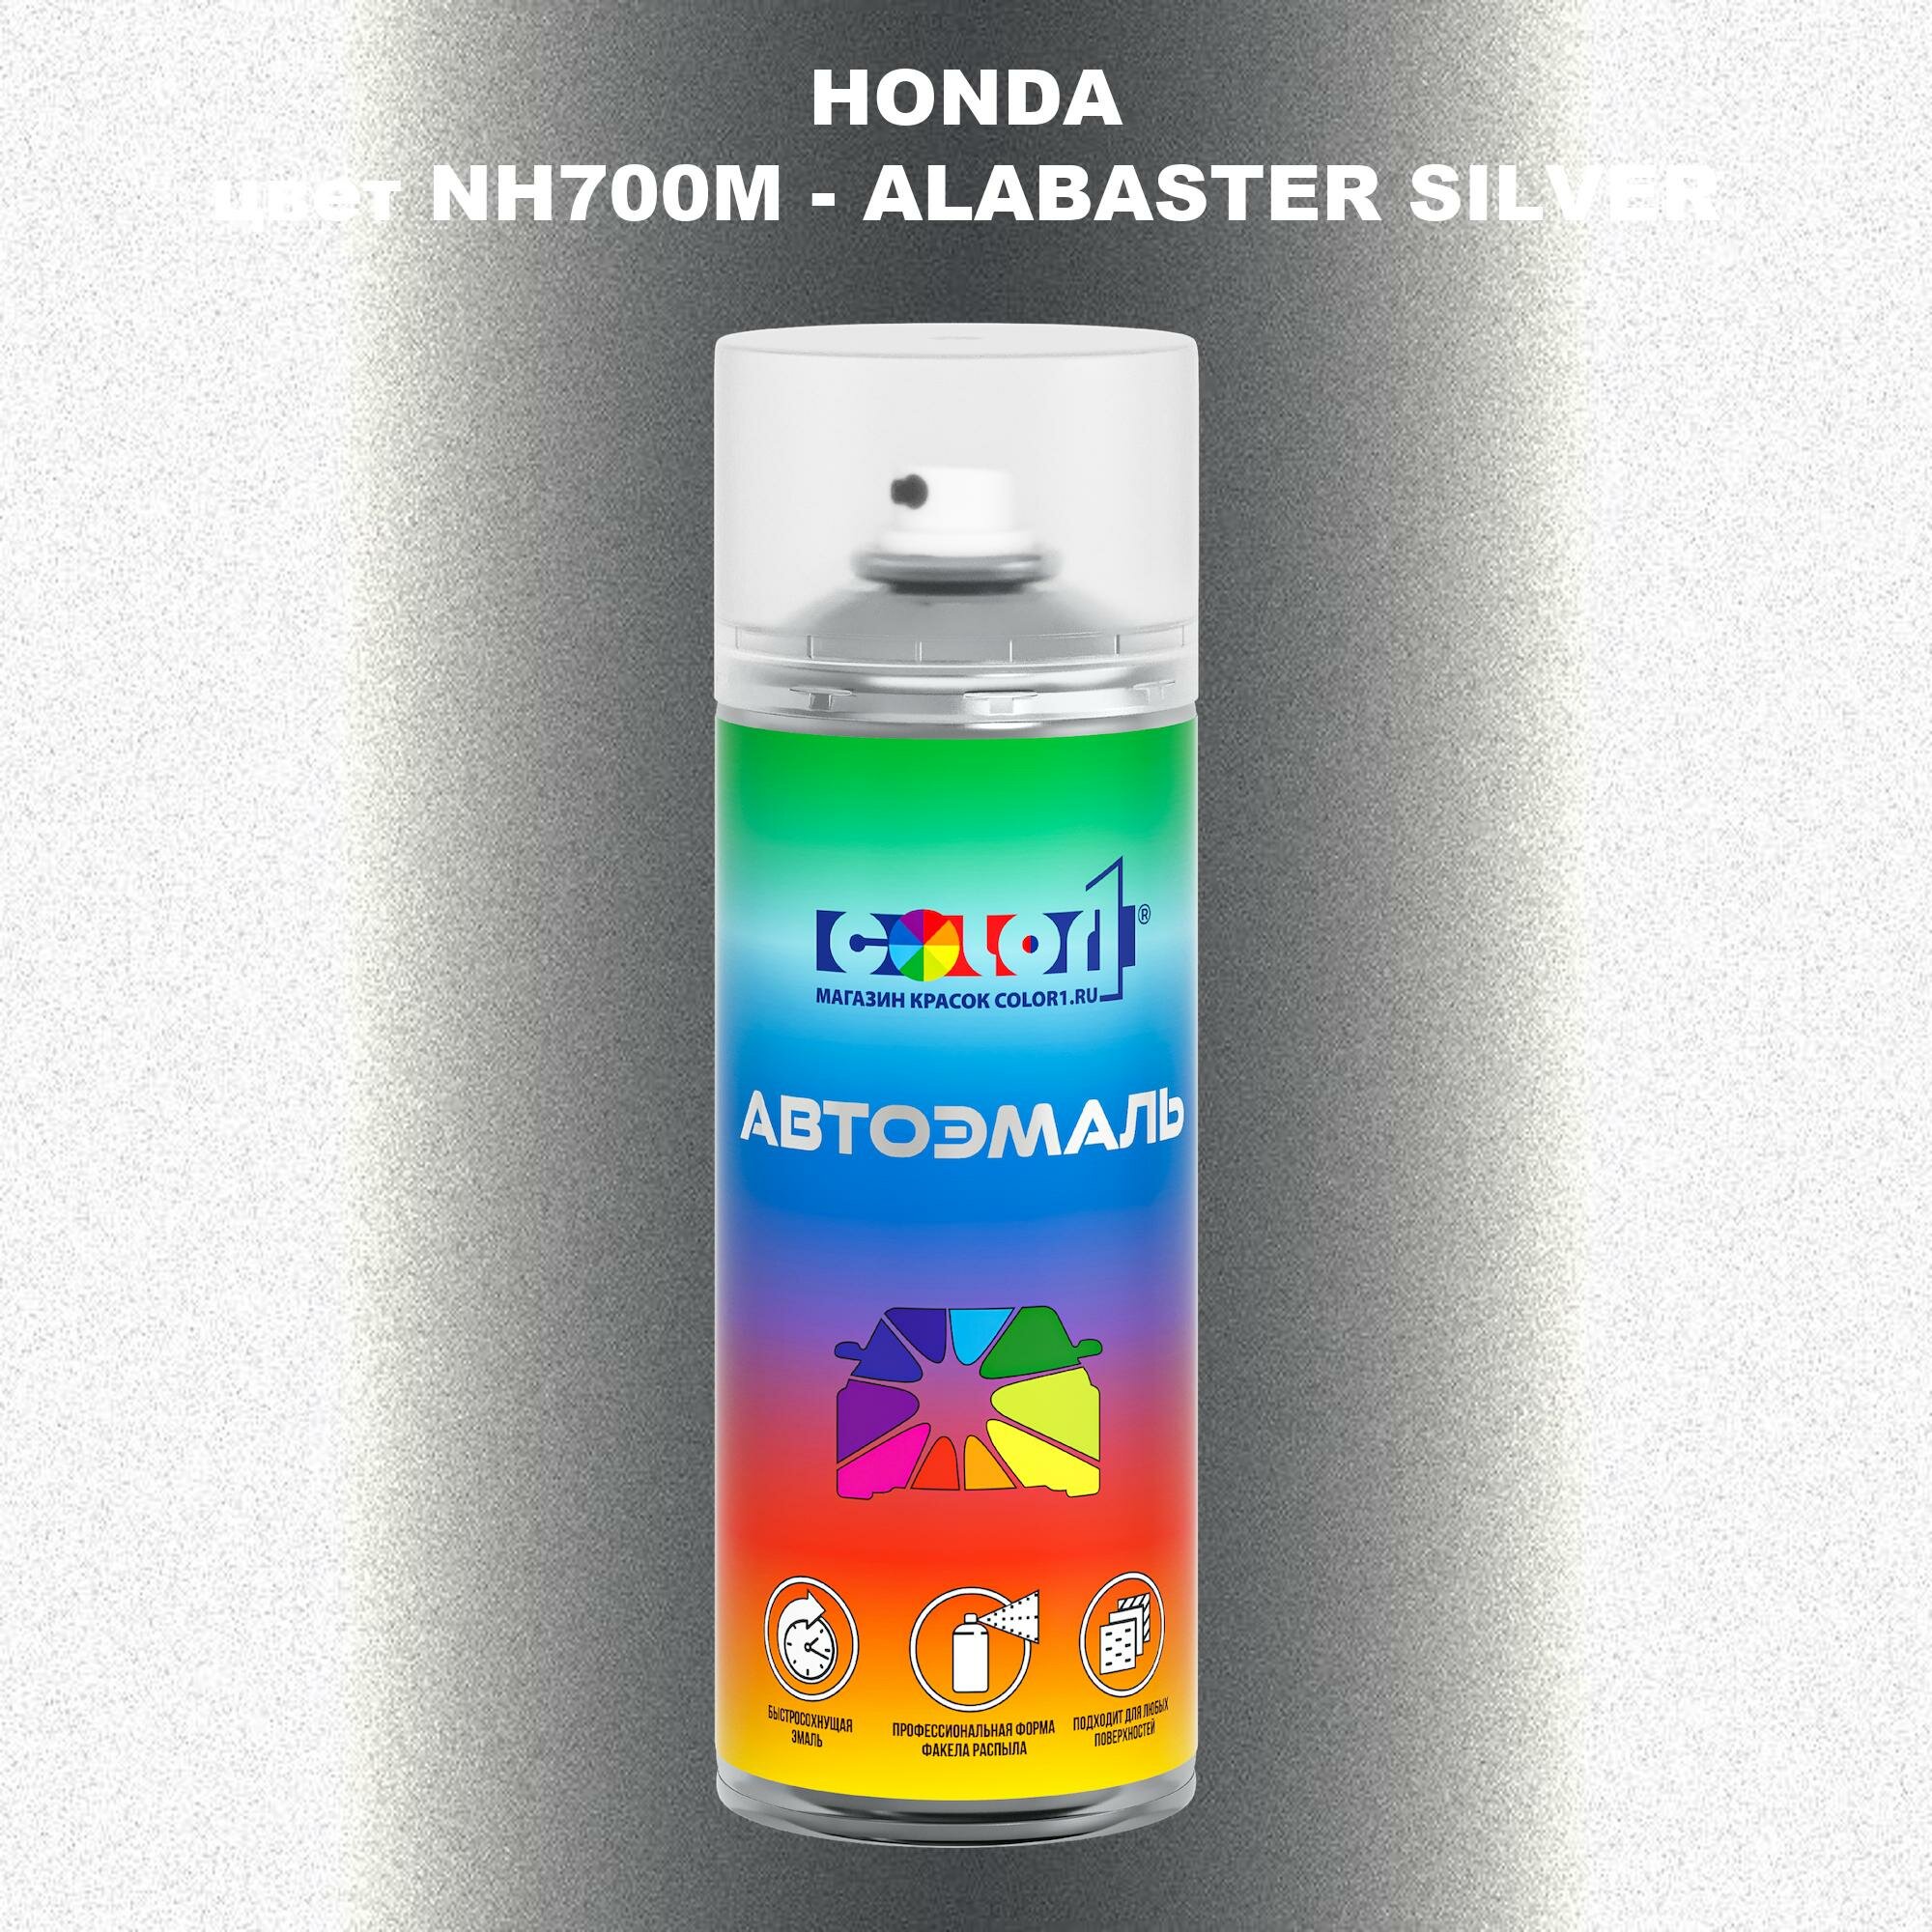 Аэрозольная краска COLOR1 для HONDA, цвет NH700M - ALABASTER SILVER